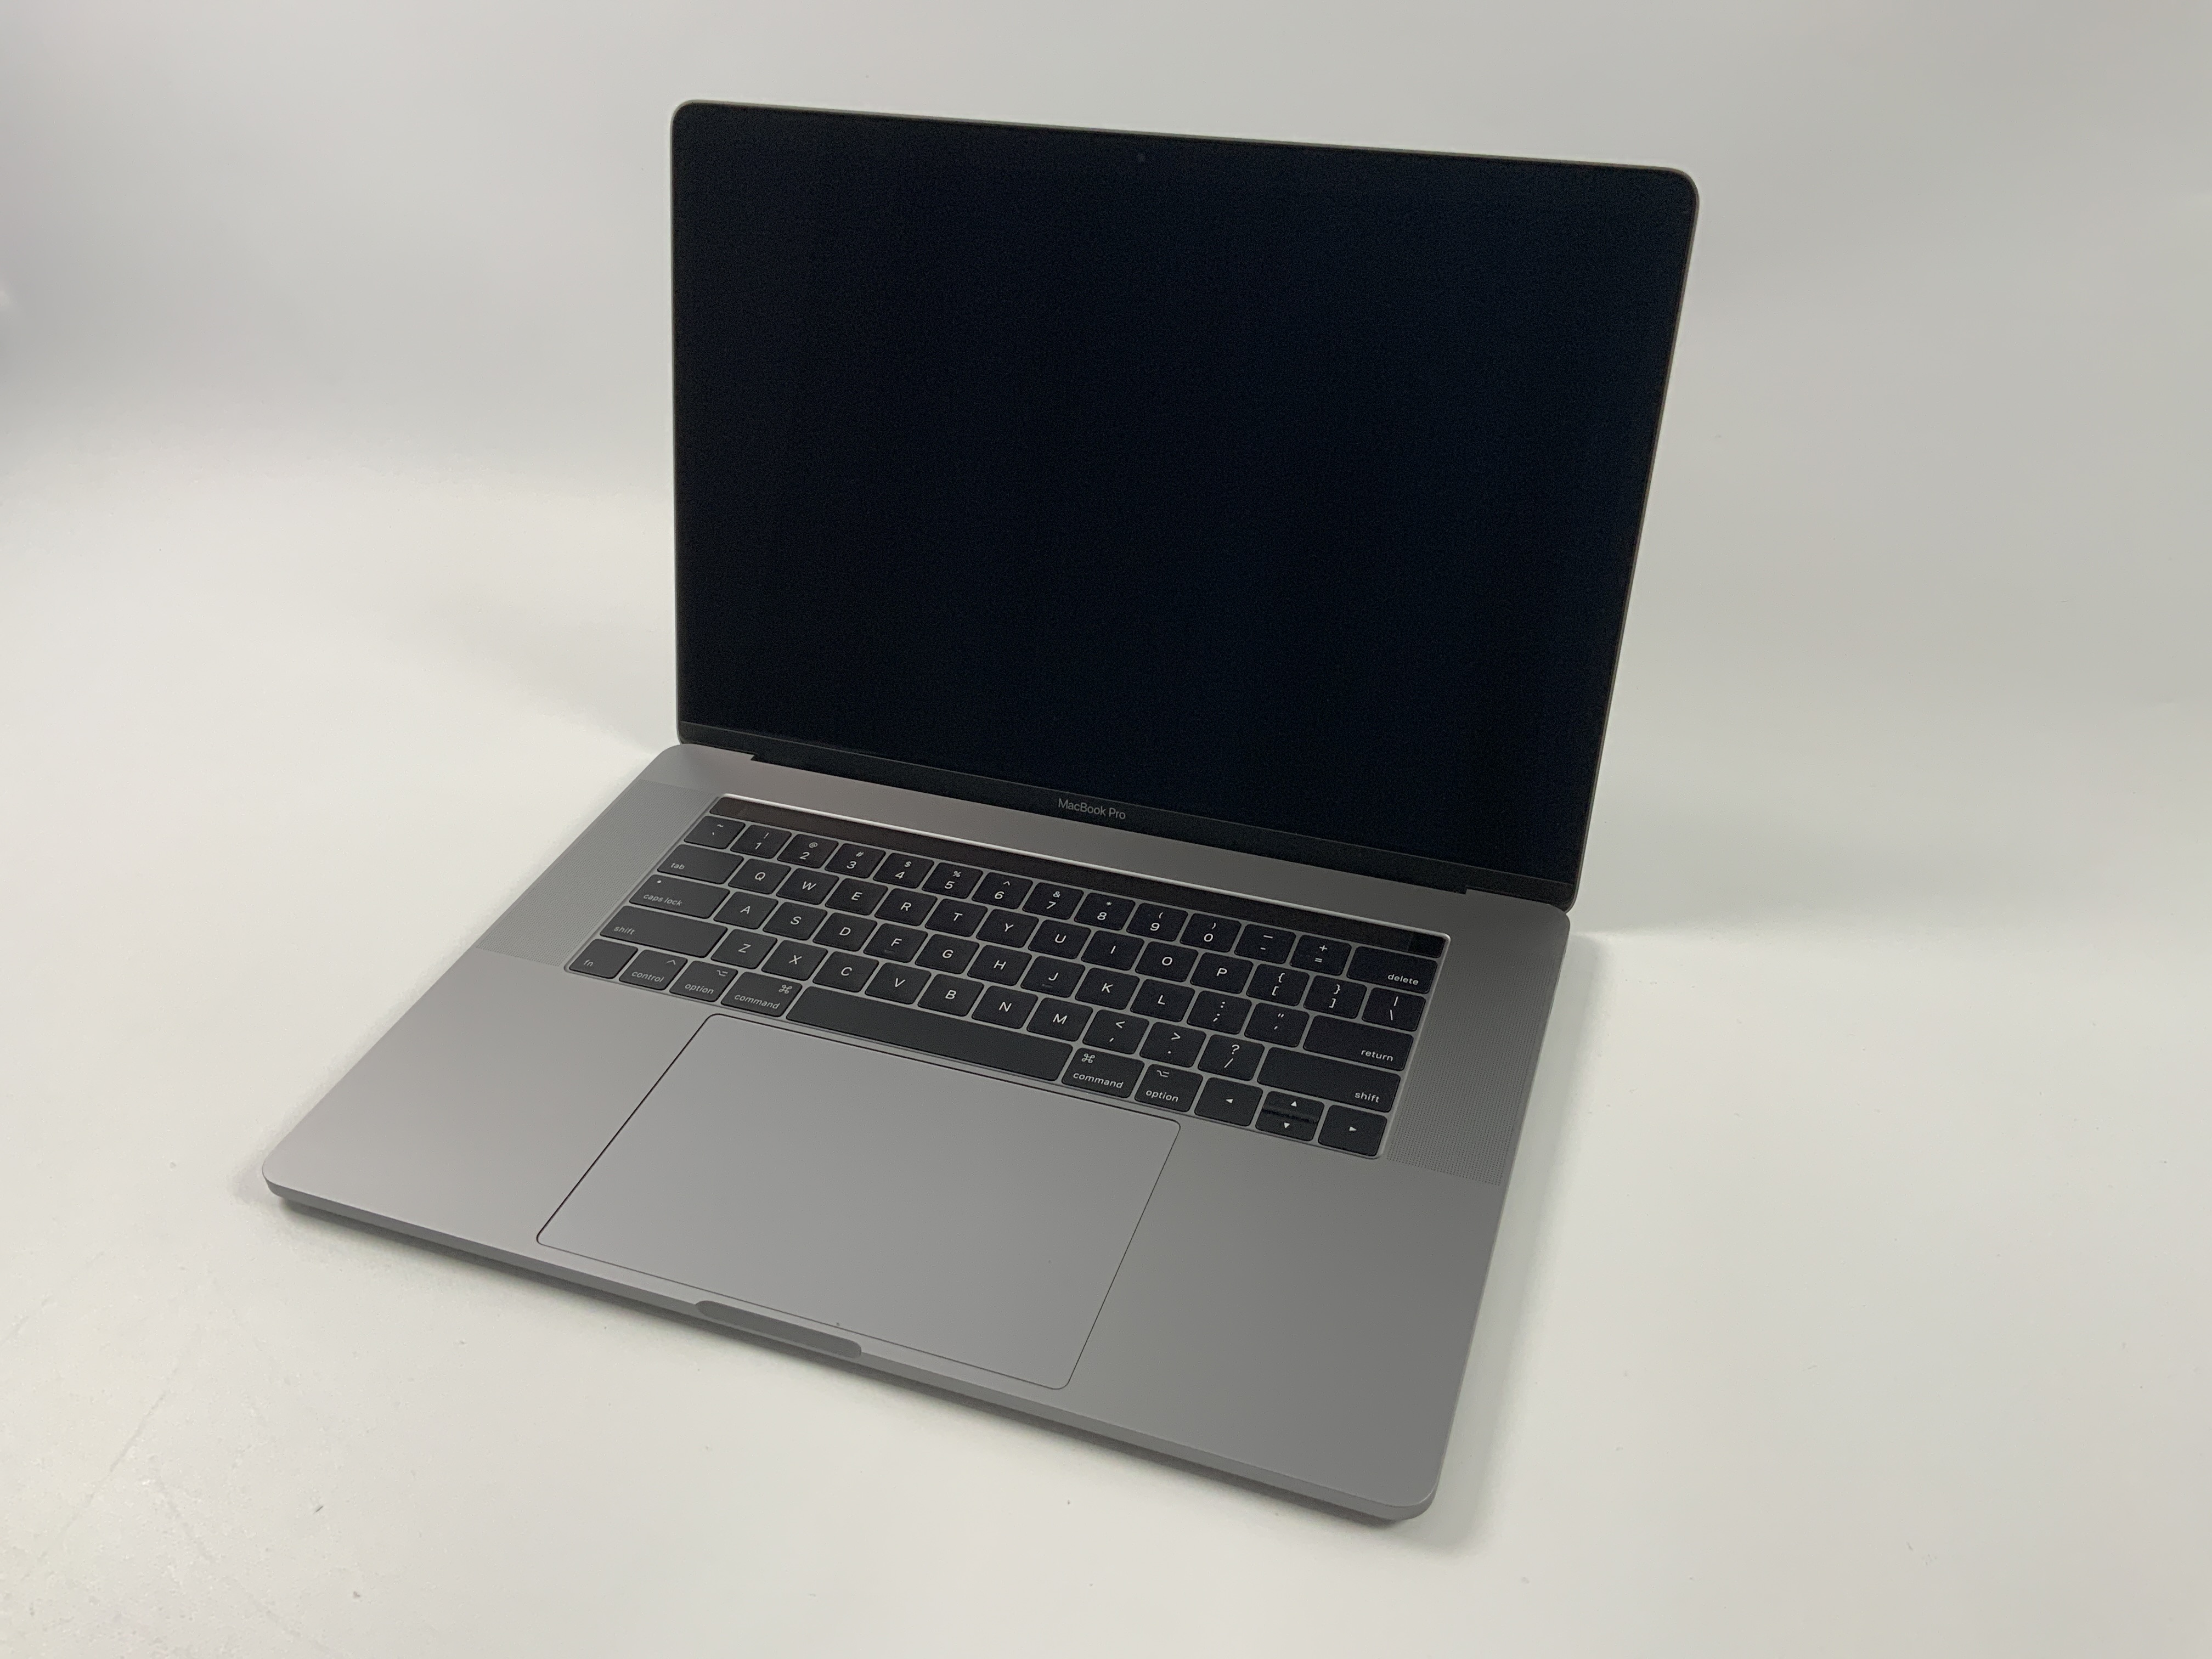 MacBook Pro 15" Touch Bar Mid 2017 (Intel Quad-Core i7 2.8 GHz 16 GB RAM 512 GB SSD), Space Gray, Intel Quad-Core i7 2.8 GHz, 16 GB RAM, 512 GB SSD, Kuva 1